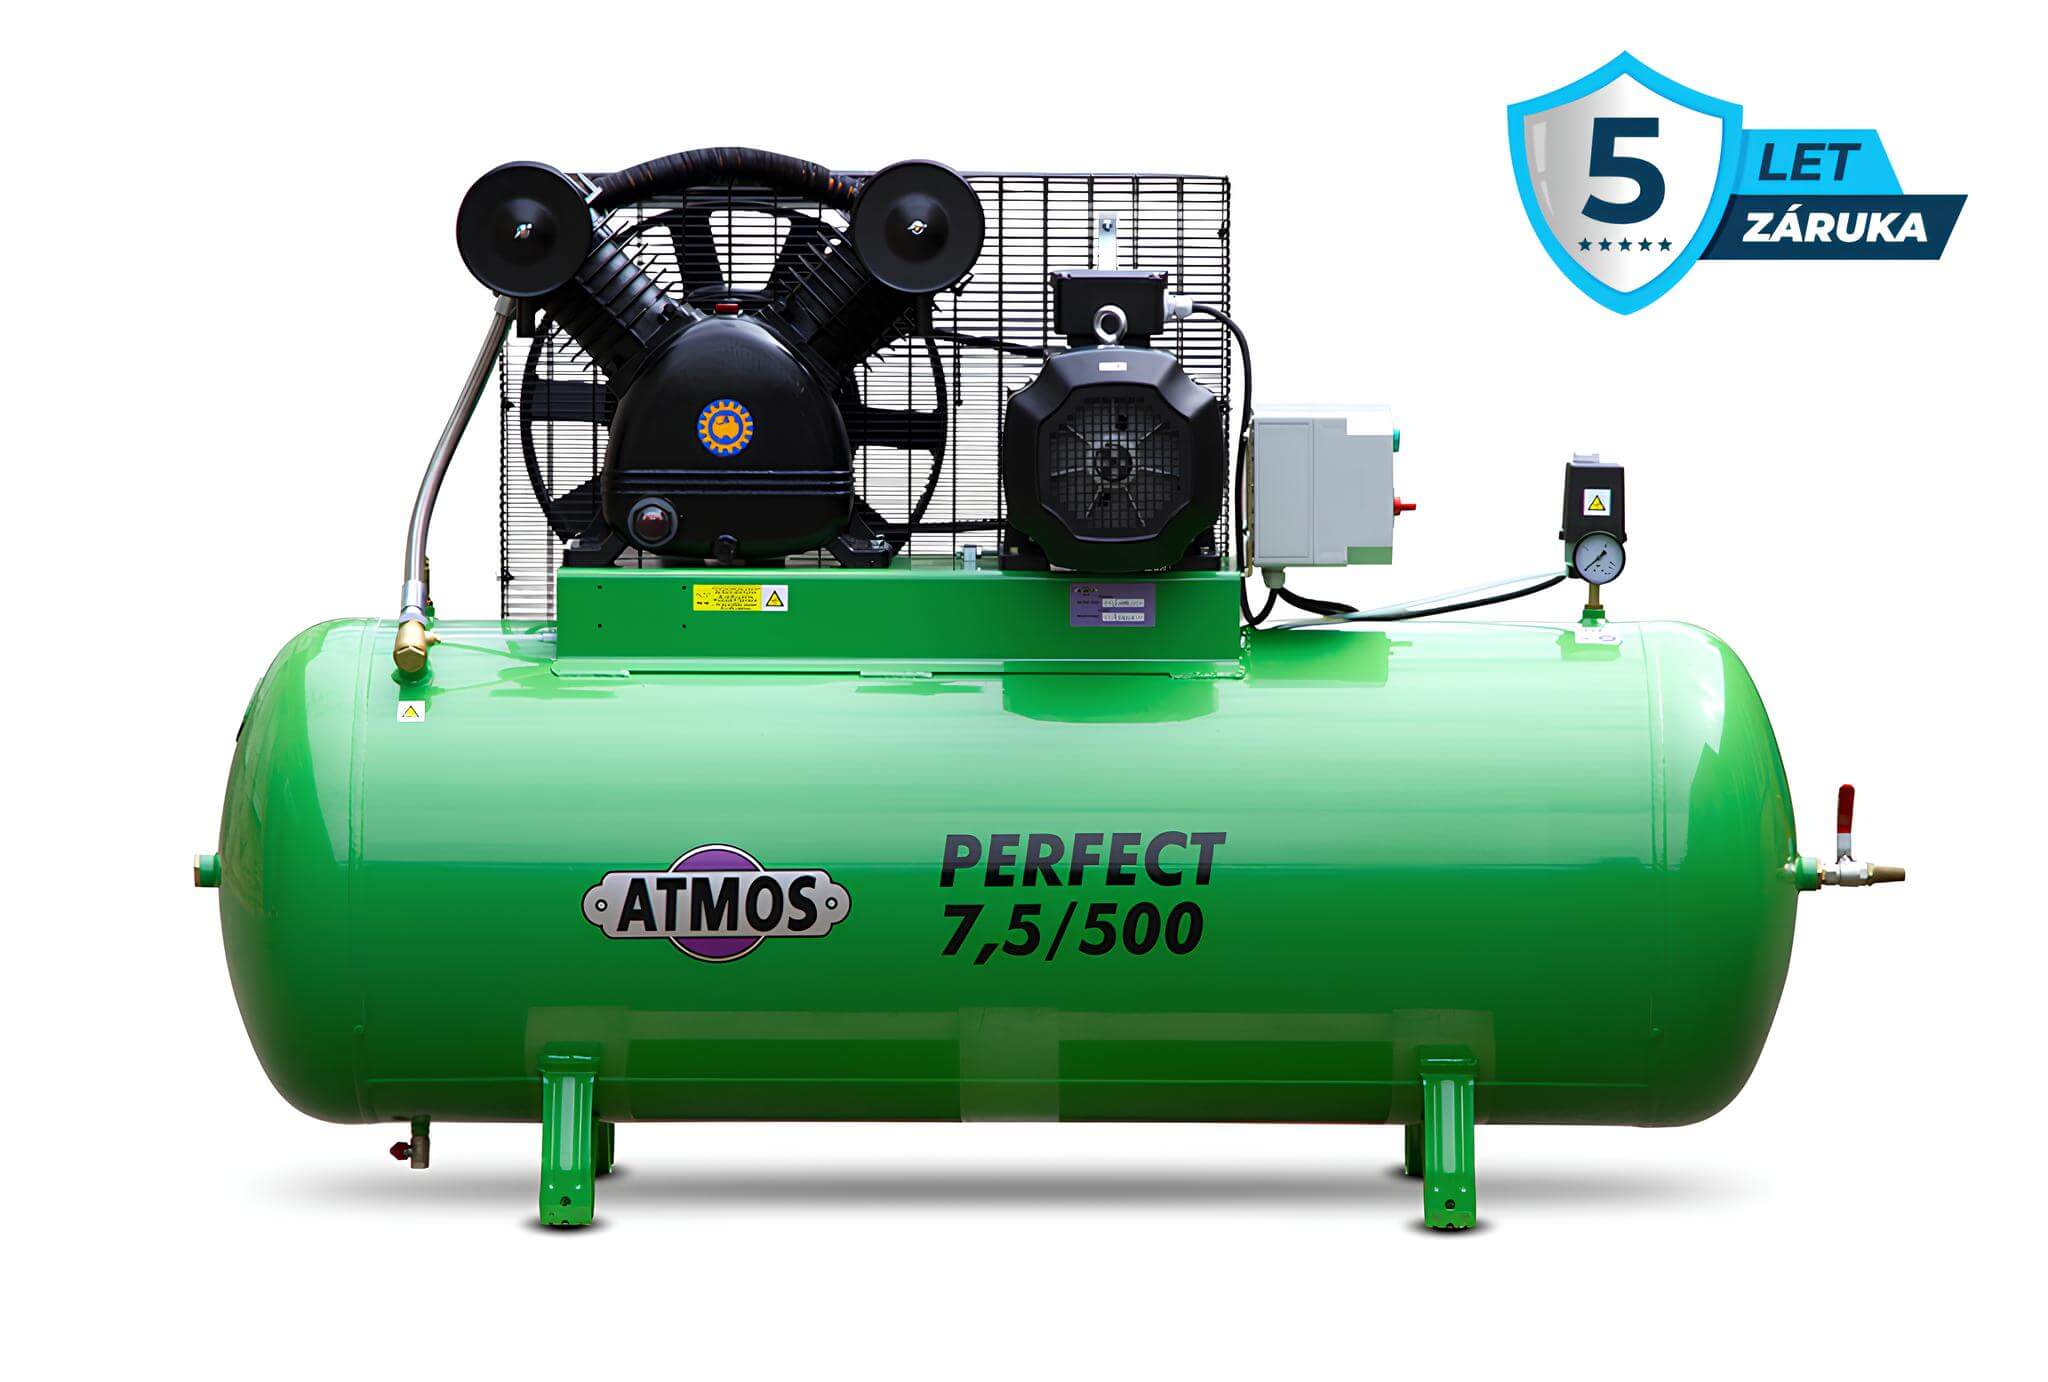 Atmos Pístový kompresor Perfect - 7,5/500YD příkon 7,5 kW, výkon 920 l/min, tlak 10 bar, vzdušník 500 l, napětí 400/50 V/Hz YD